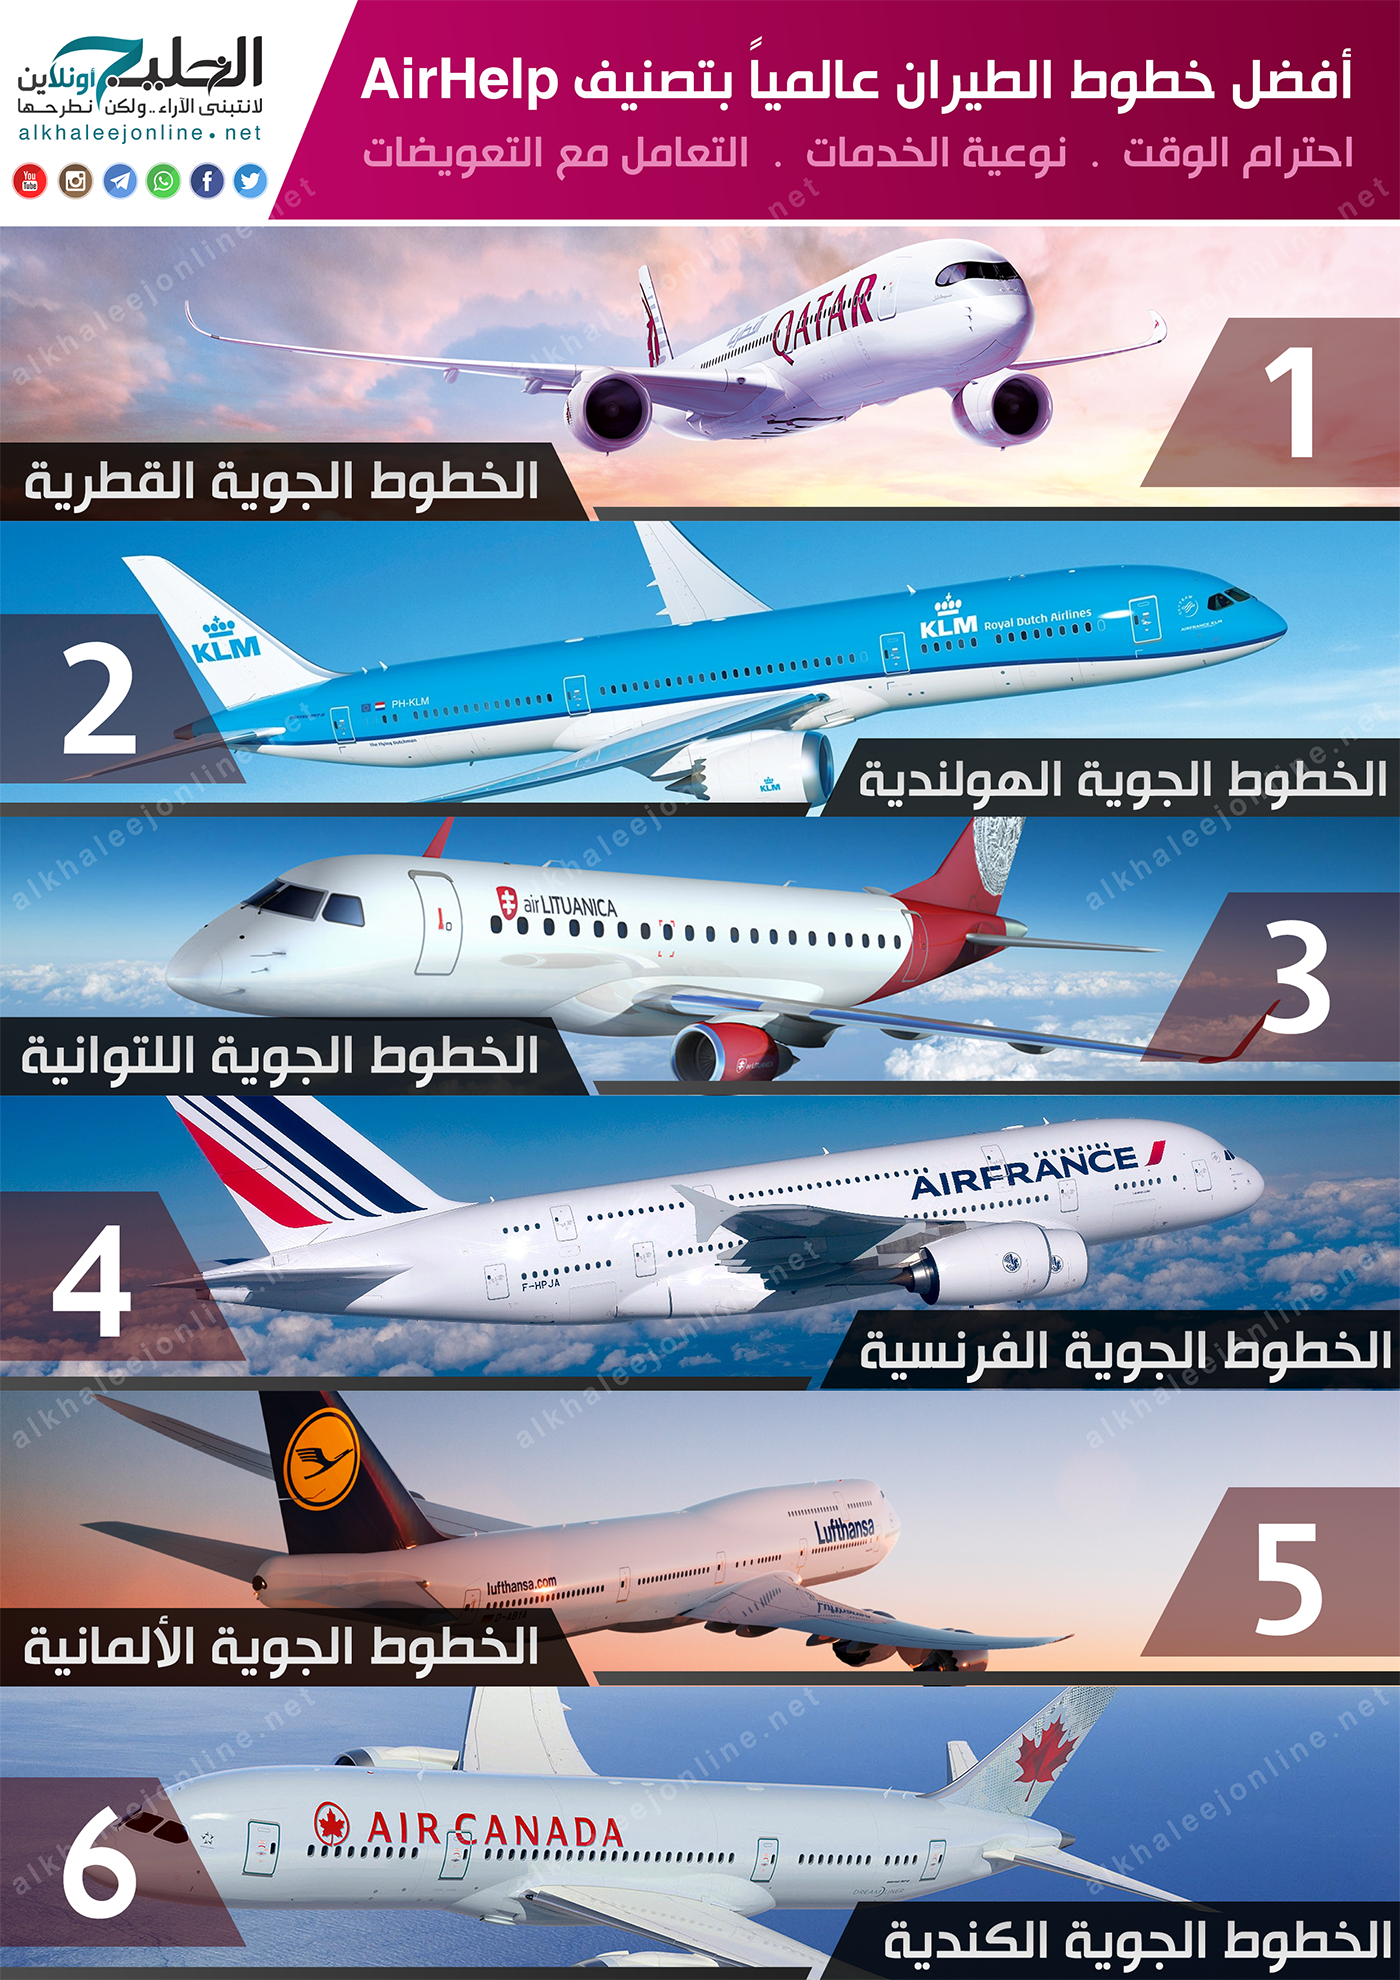 الطيران السعودية شركات في شركات الطيران